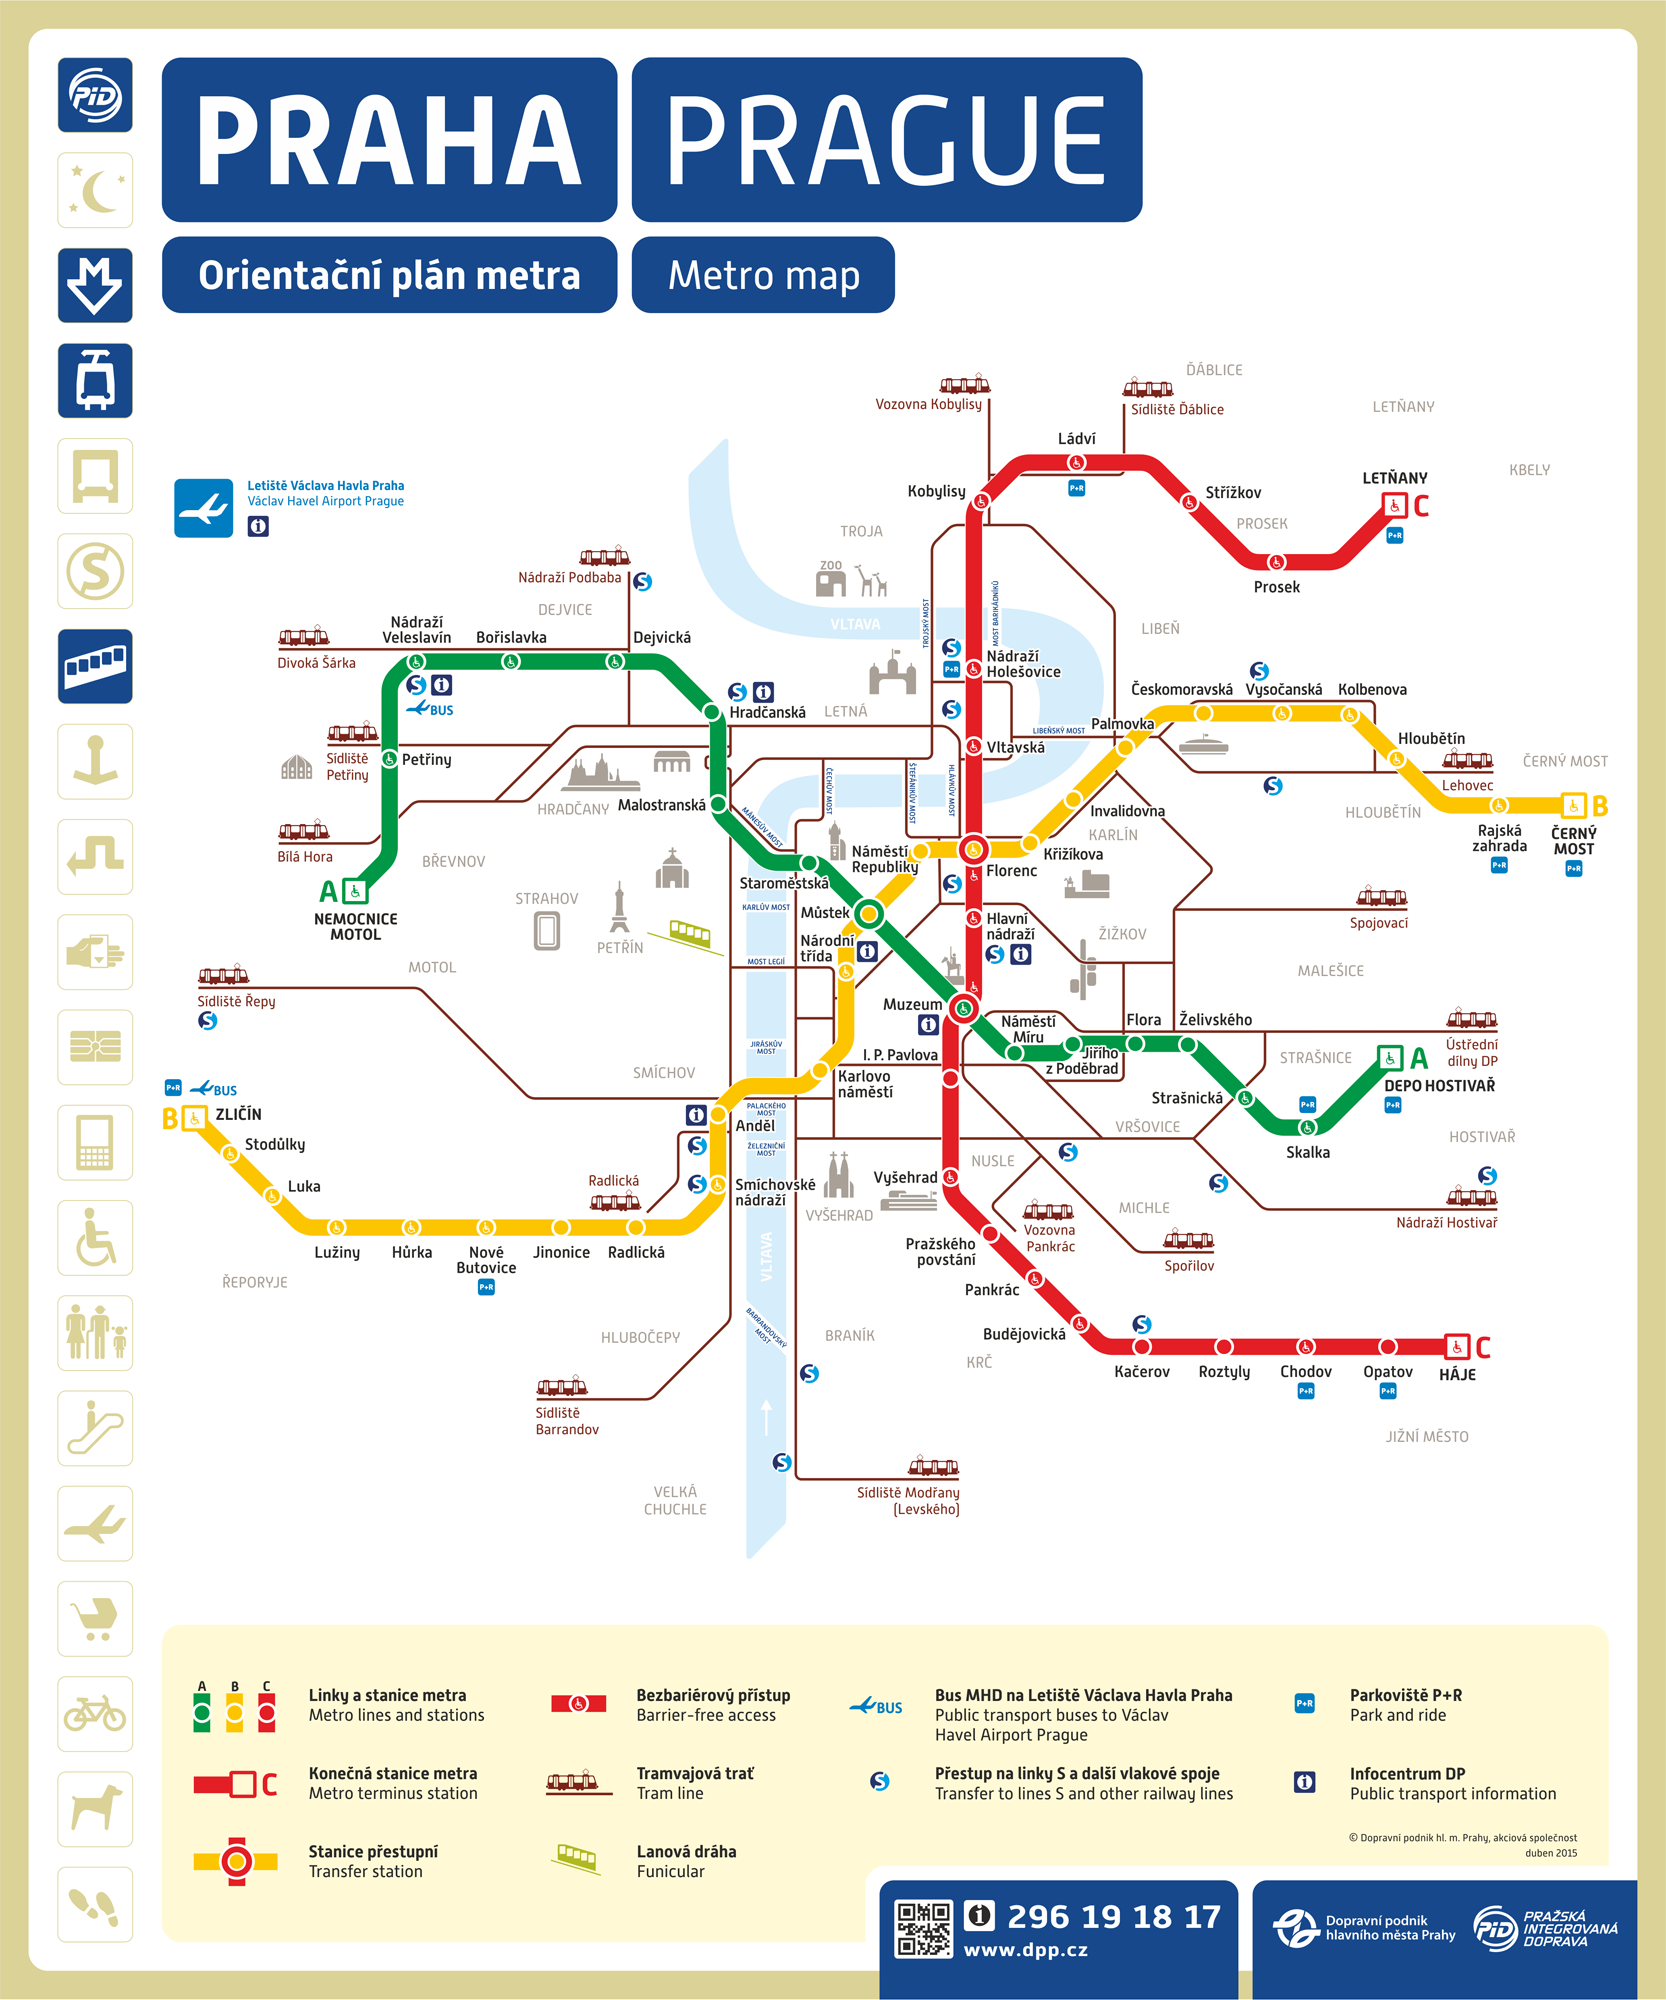 Plan del metro y tranvías en Praga